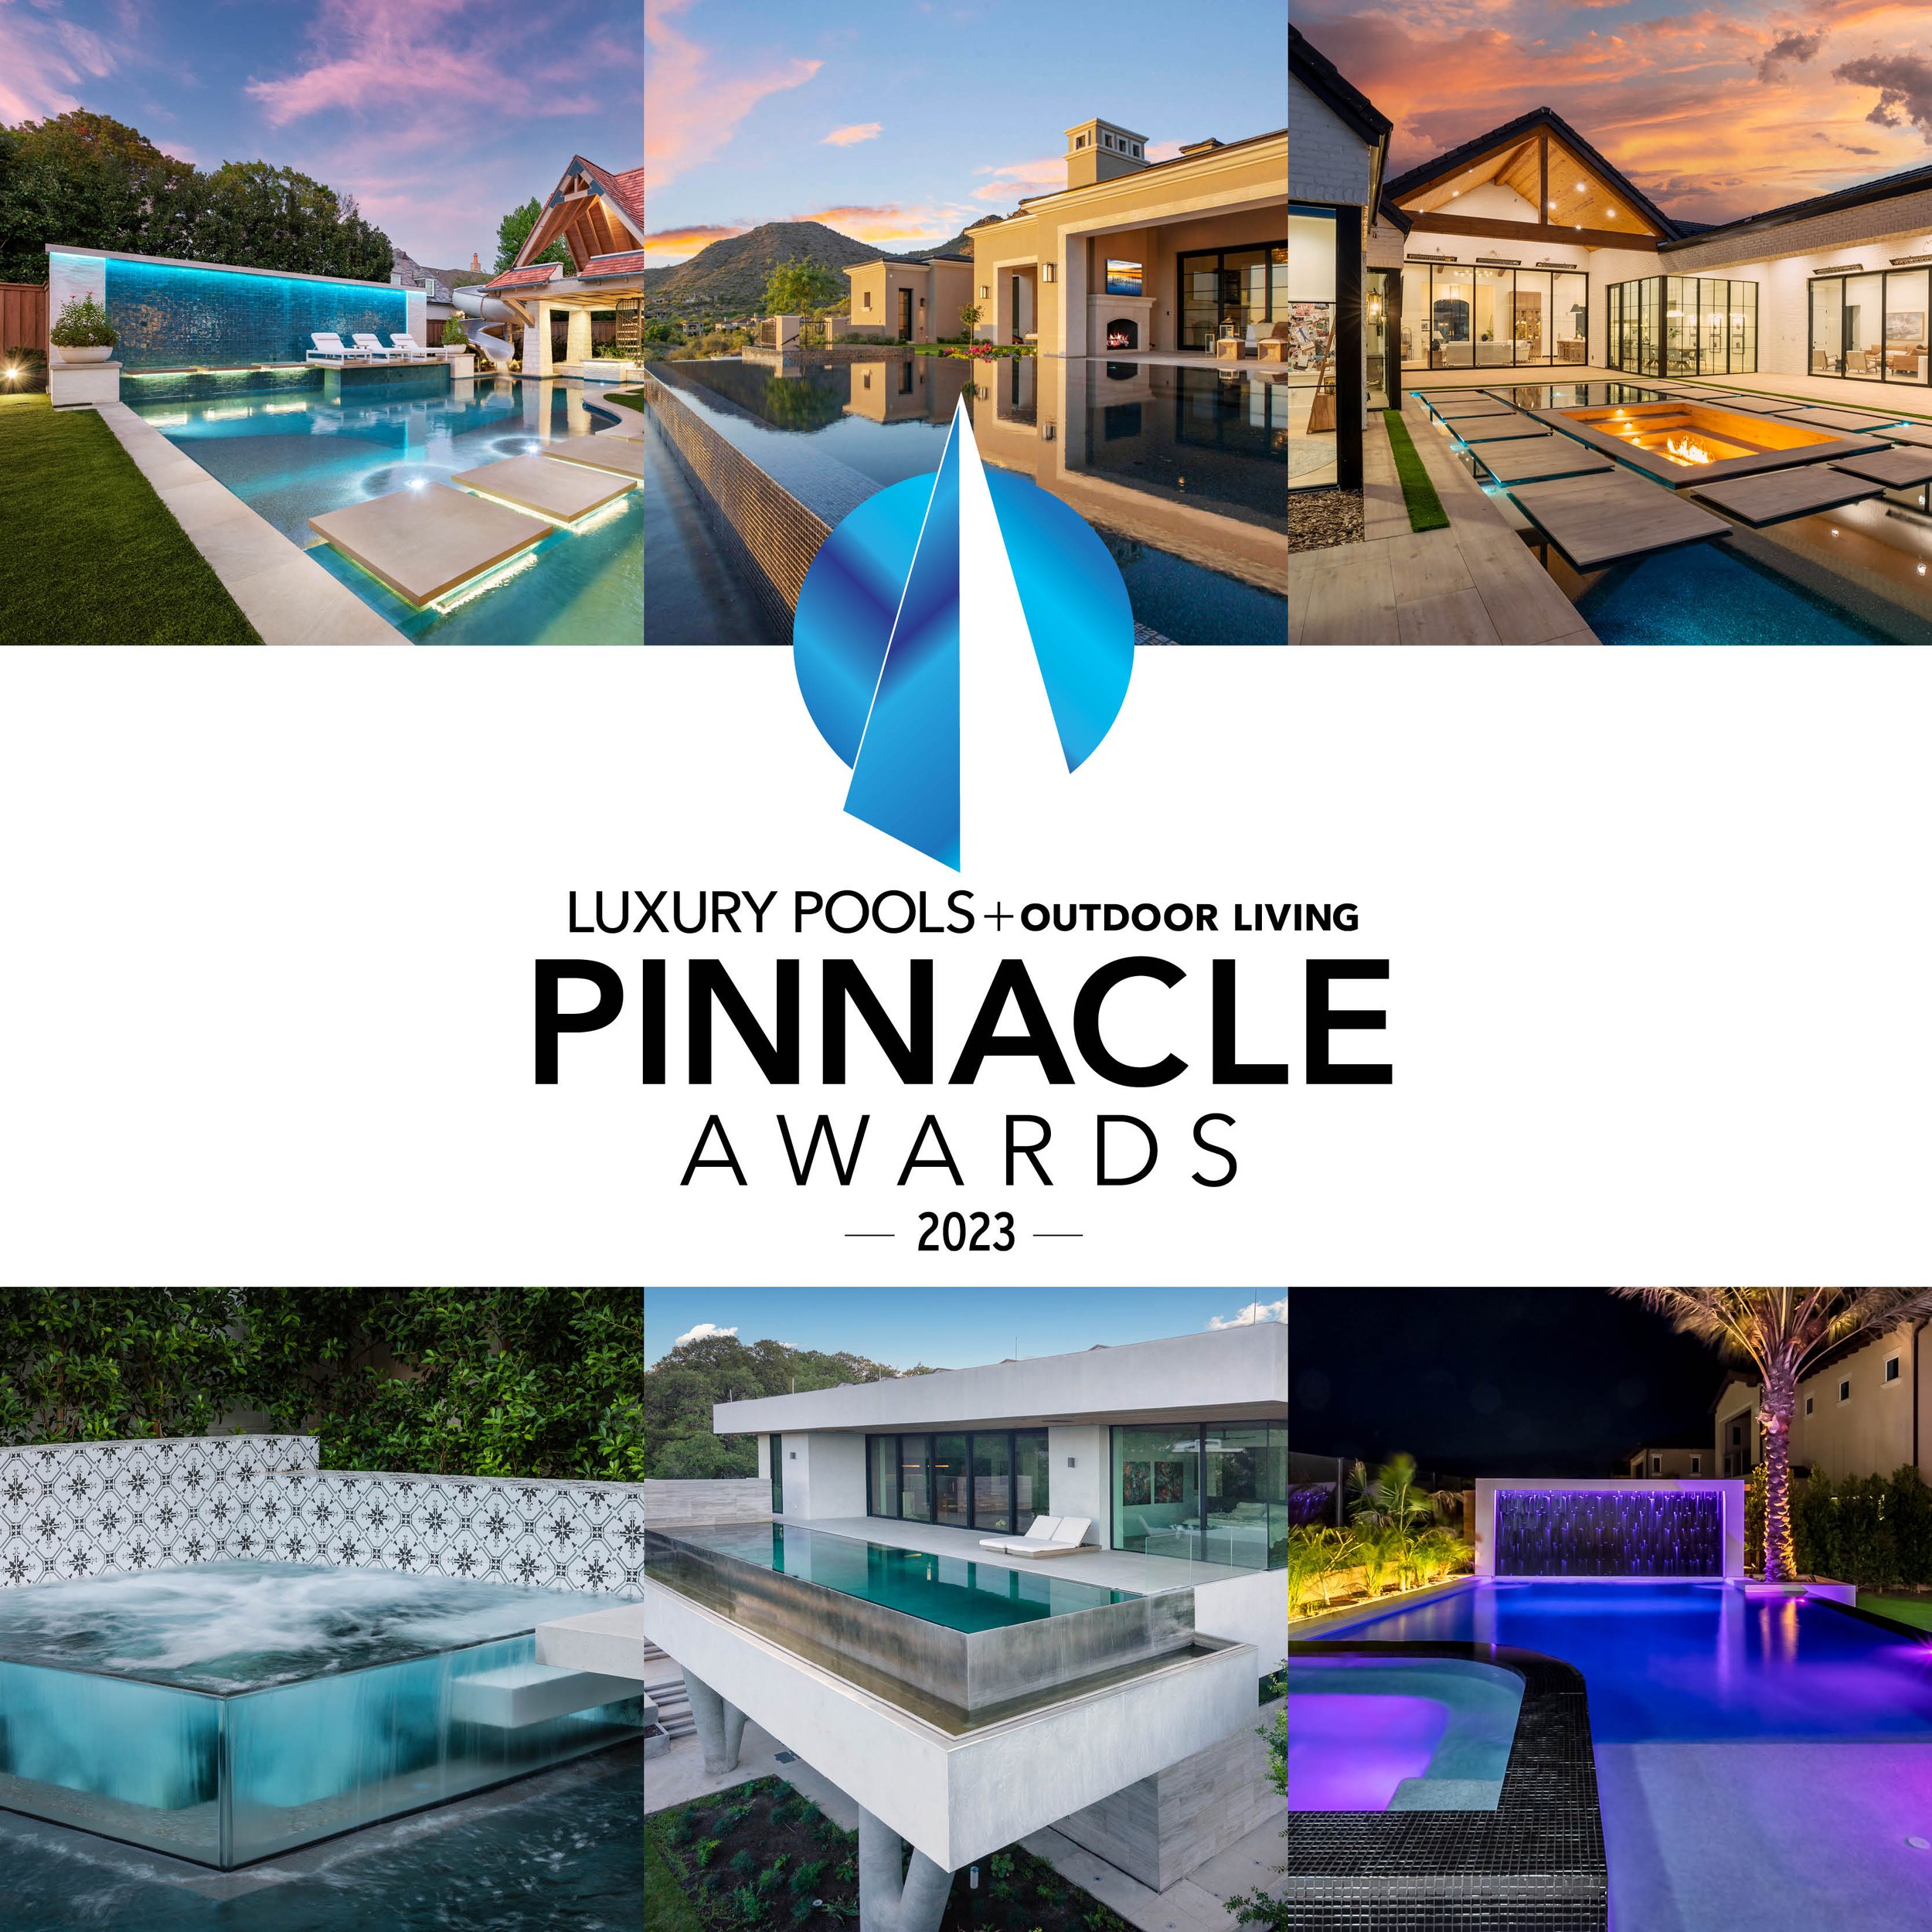  Luxury Pools + Outdoor Living 2023 Pinnacle Award Winner